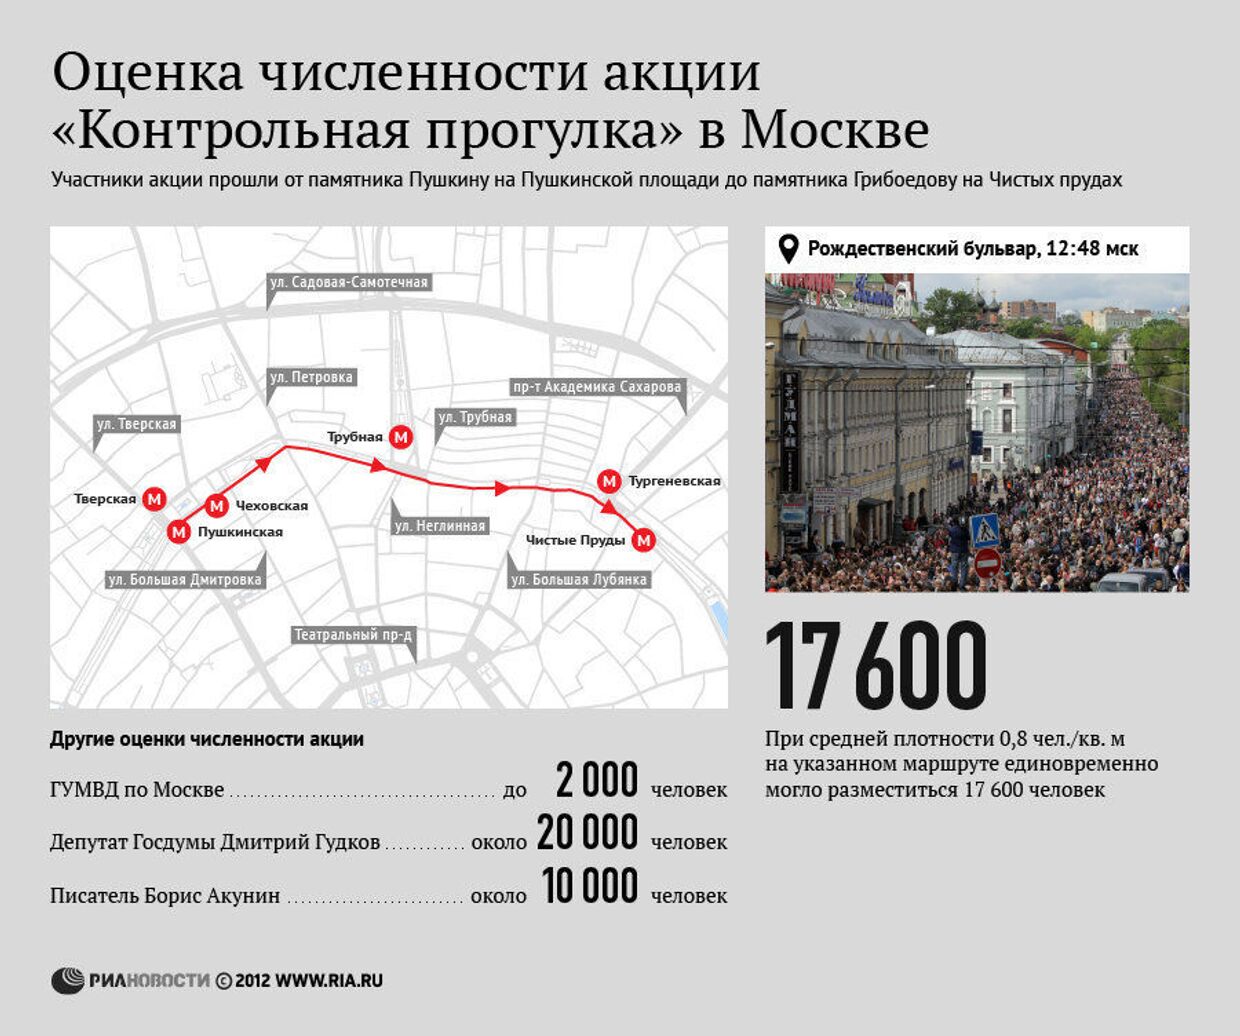 Оценка численности акции «Контрольная прогулка» в Москве